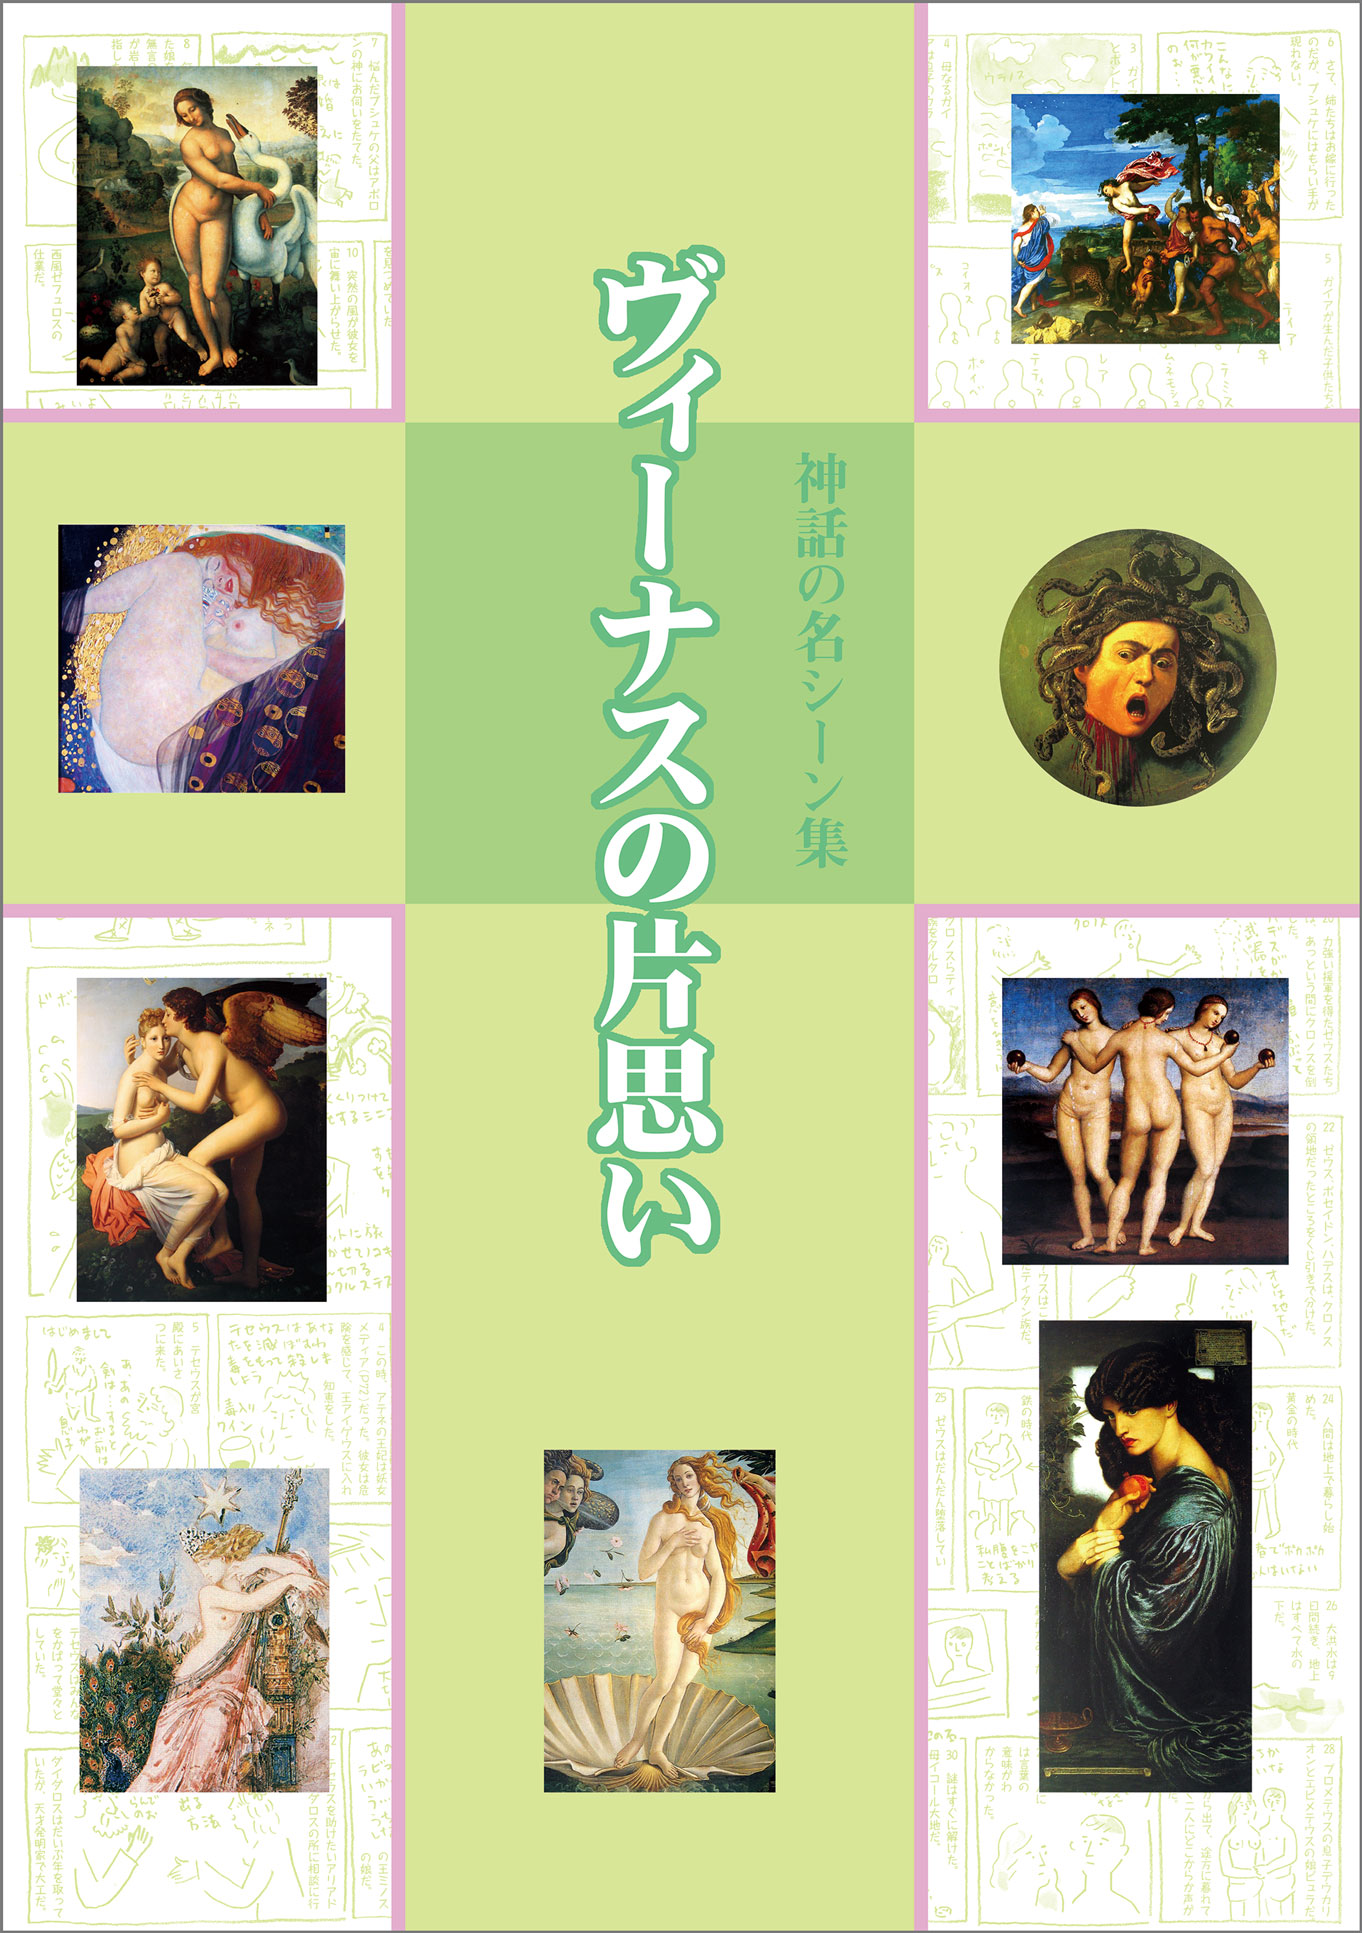 ヴィーナスの片思い 神話の名シーン集の商品画像